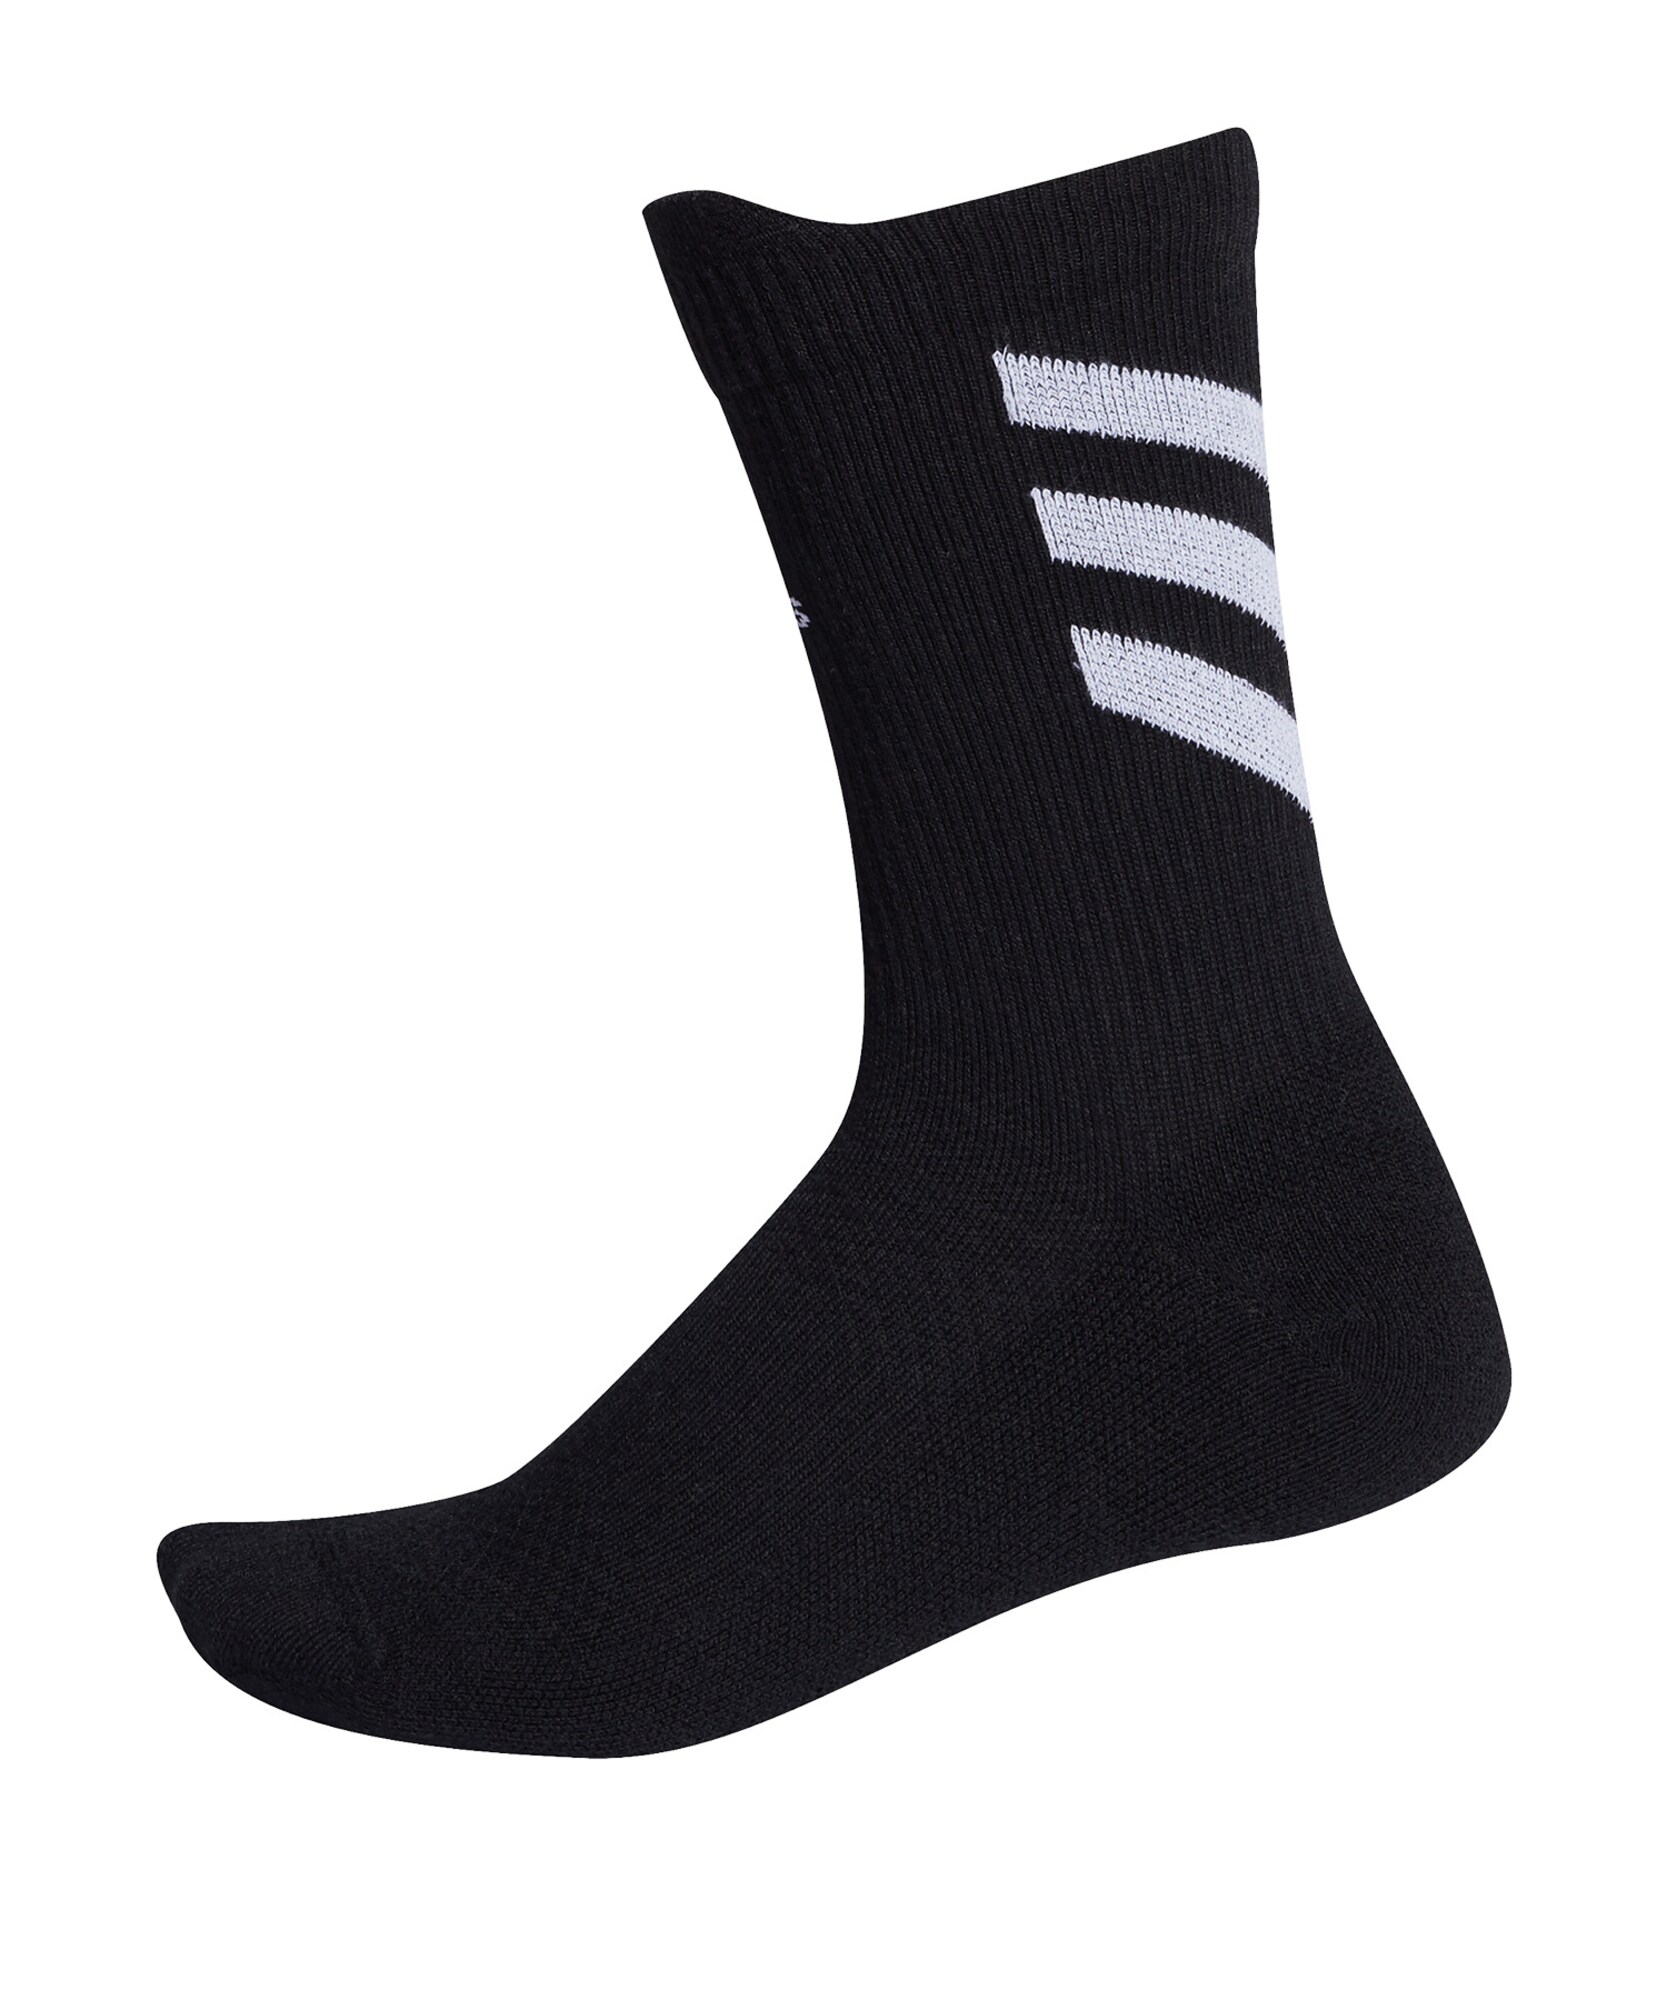 ADIDAS PERFORMANCE Sportinės kojinės  juoda / šviesiai pilka